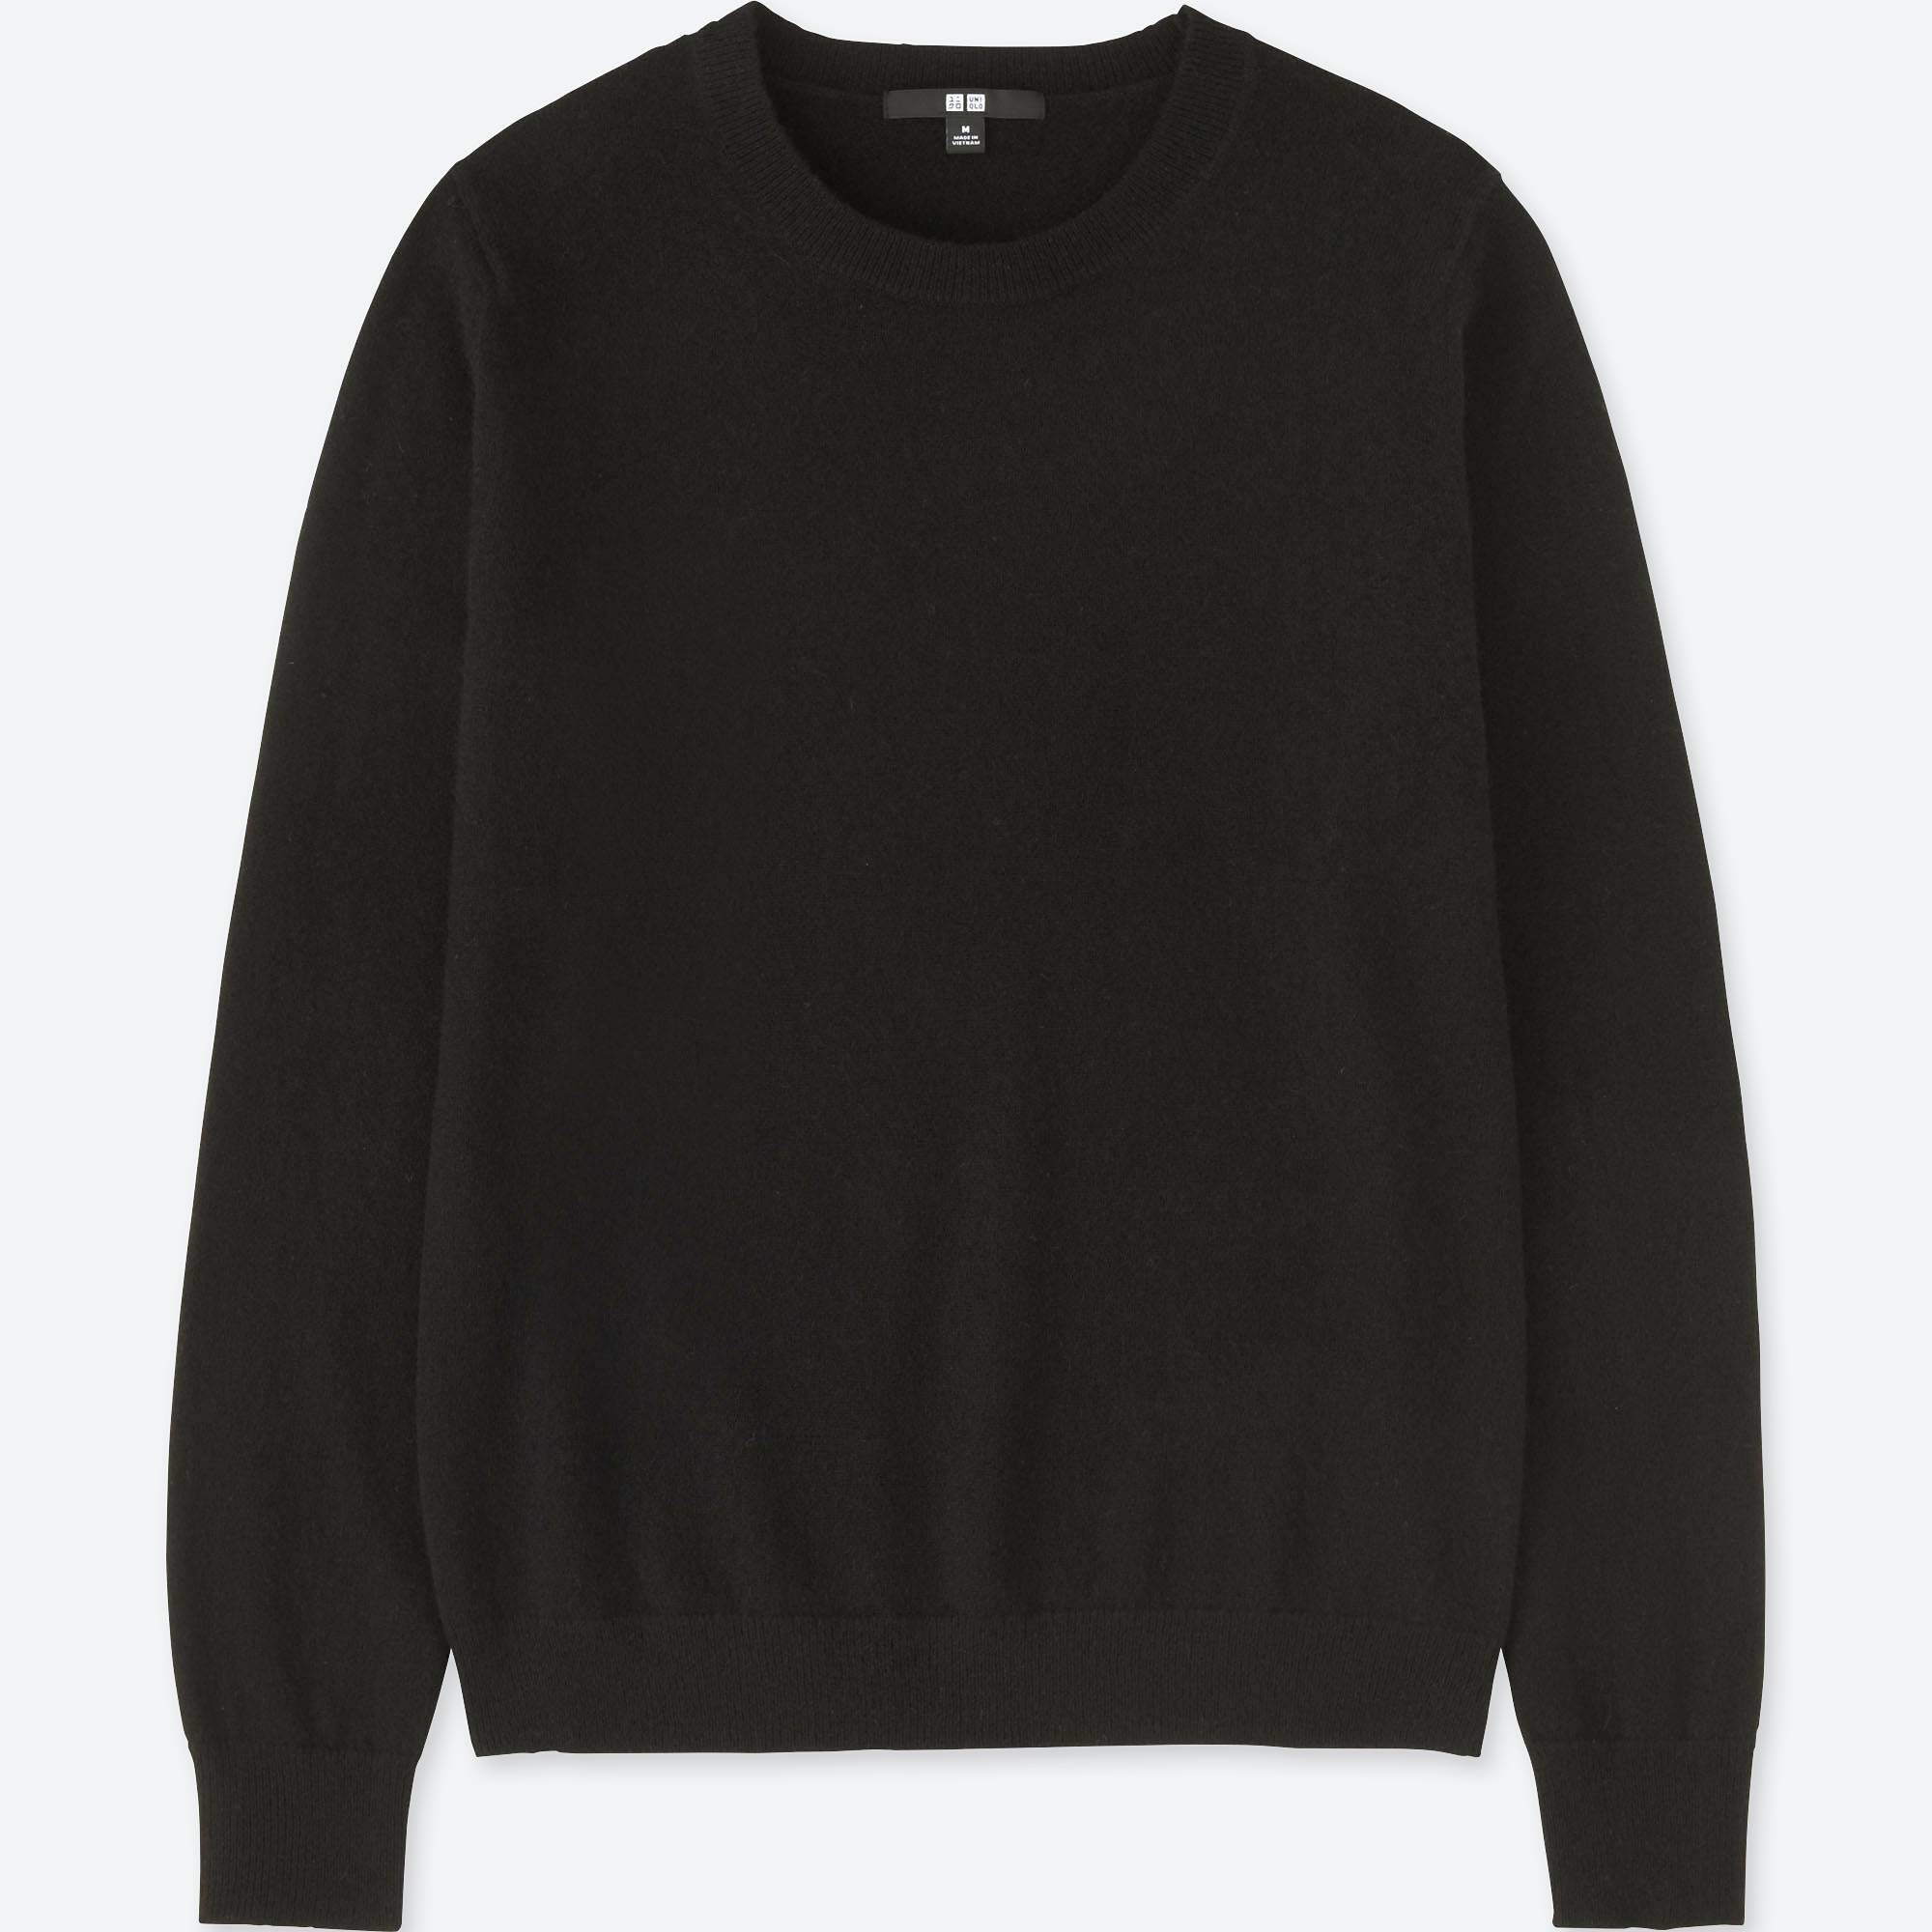 The Black Cashmere Sweater: A Wardrobe Staple — christie ferrari